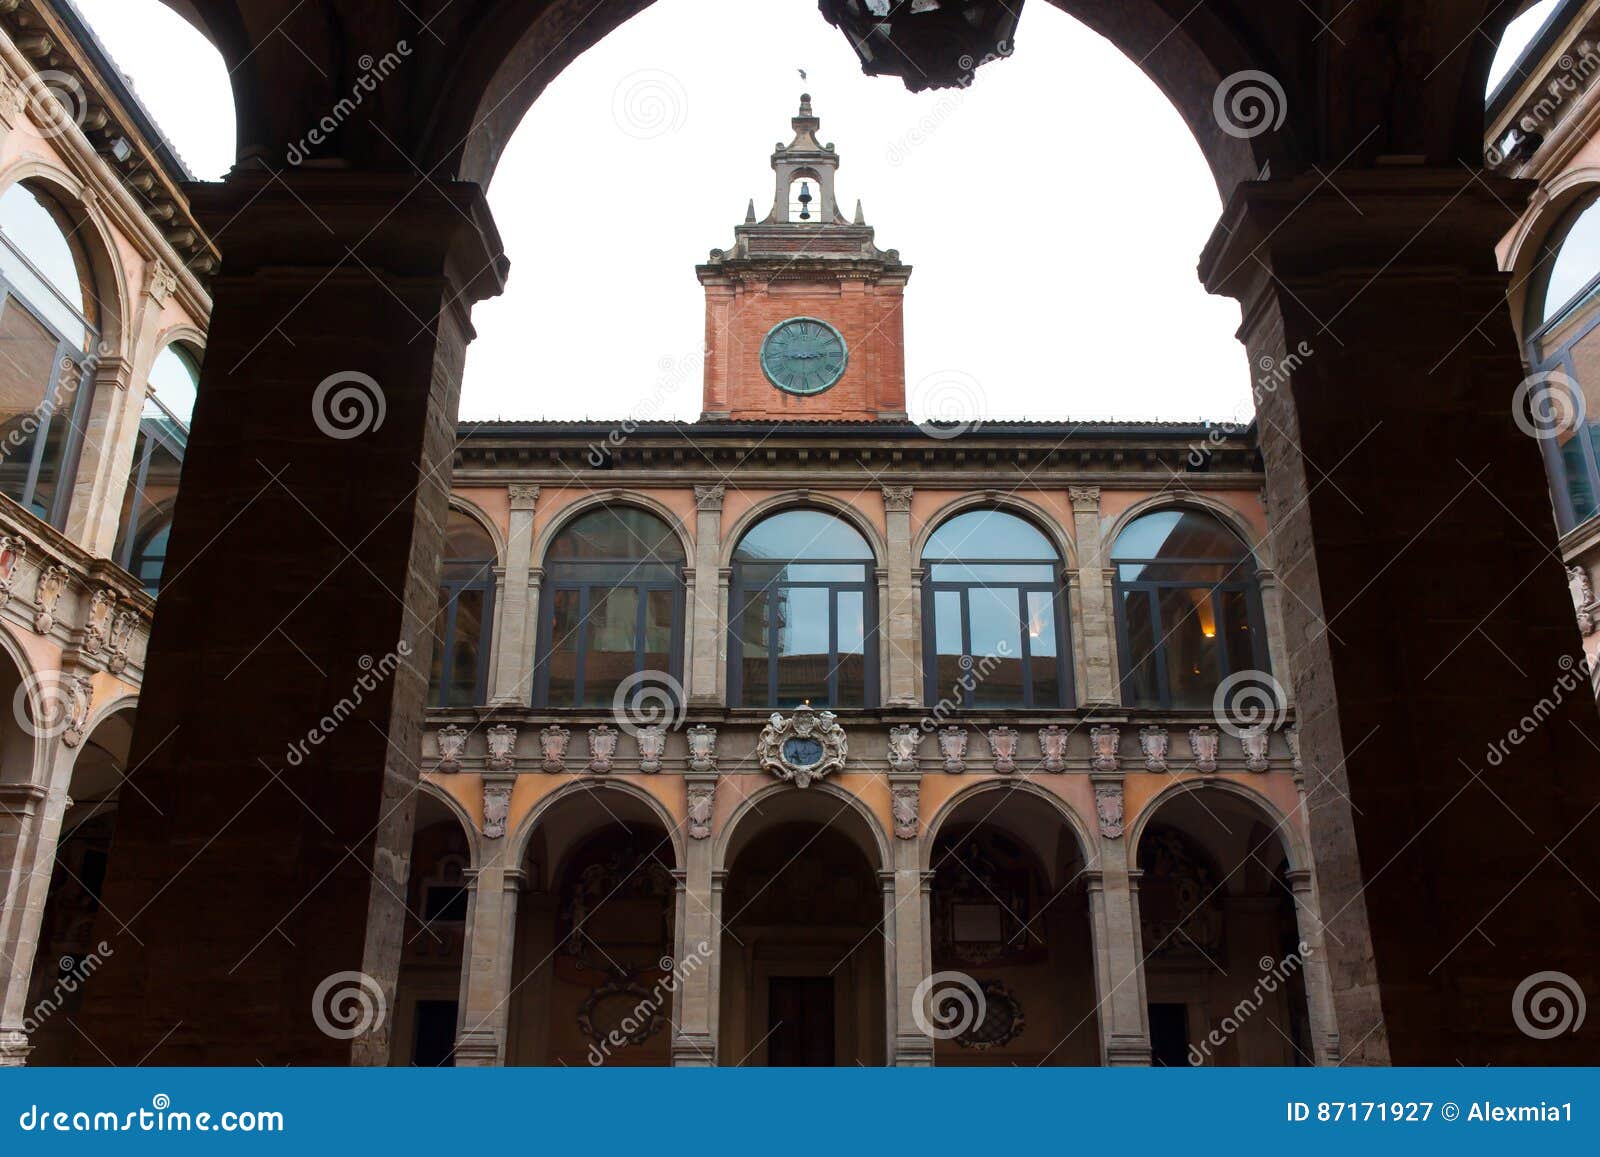 Самые первые университеты появились в. Болонский университет Италия 1088. Болонья дворец Архигимназии. Болонский университет Италия эпоха Возрождения. Болонский университет (Италия) викивей.